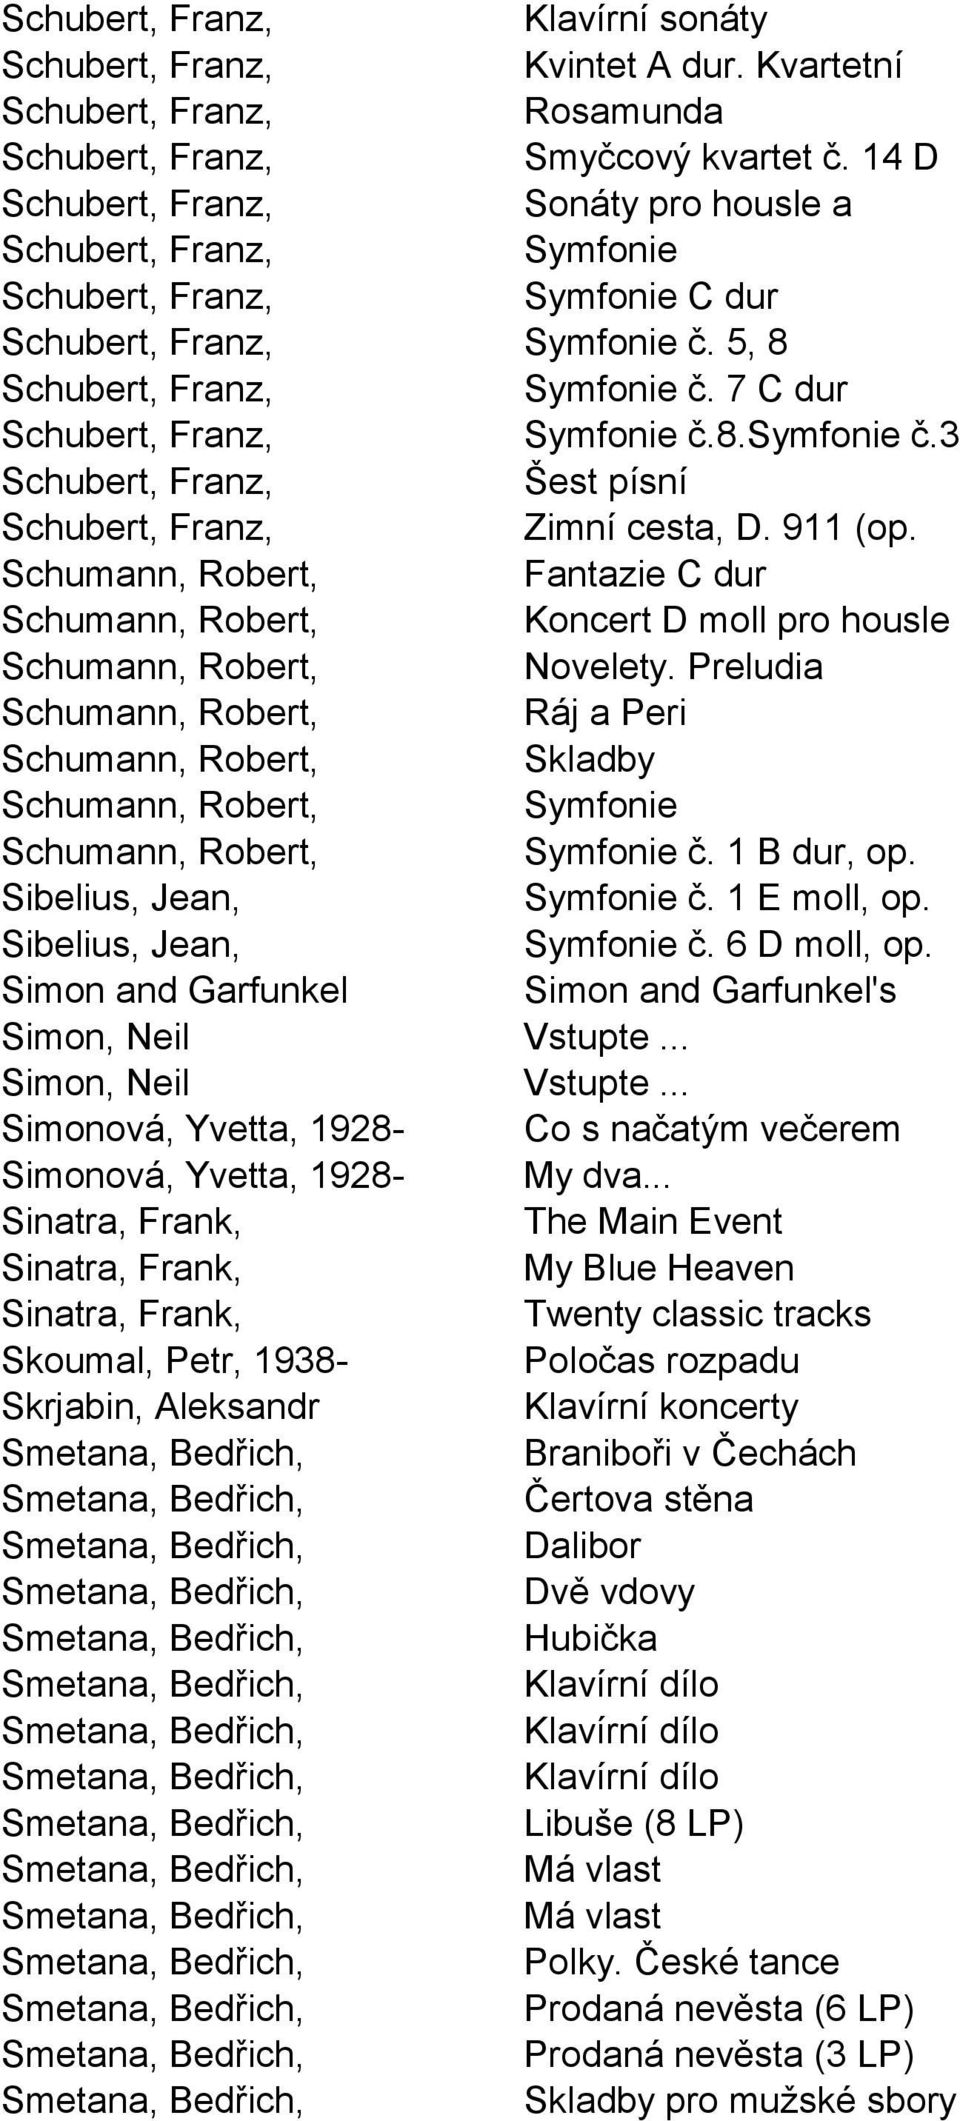 8.symfonie č.3 Schubert, Franz, Šest písní Schubert, Franz, Zimní cesta, D. 911 (op. Schumann, Robert, Fantazie C dur Schumann, Robert, Koncert D moll pro housle Schumann, Robert, Novelety.